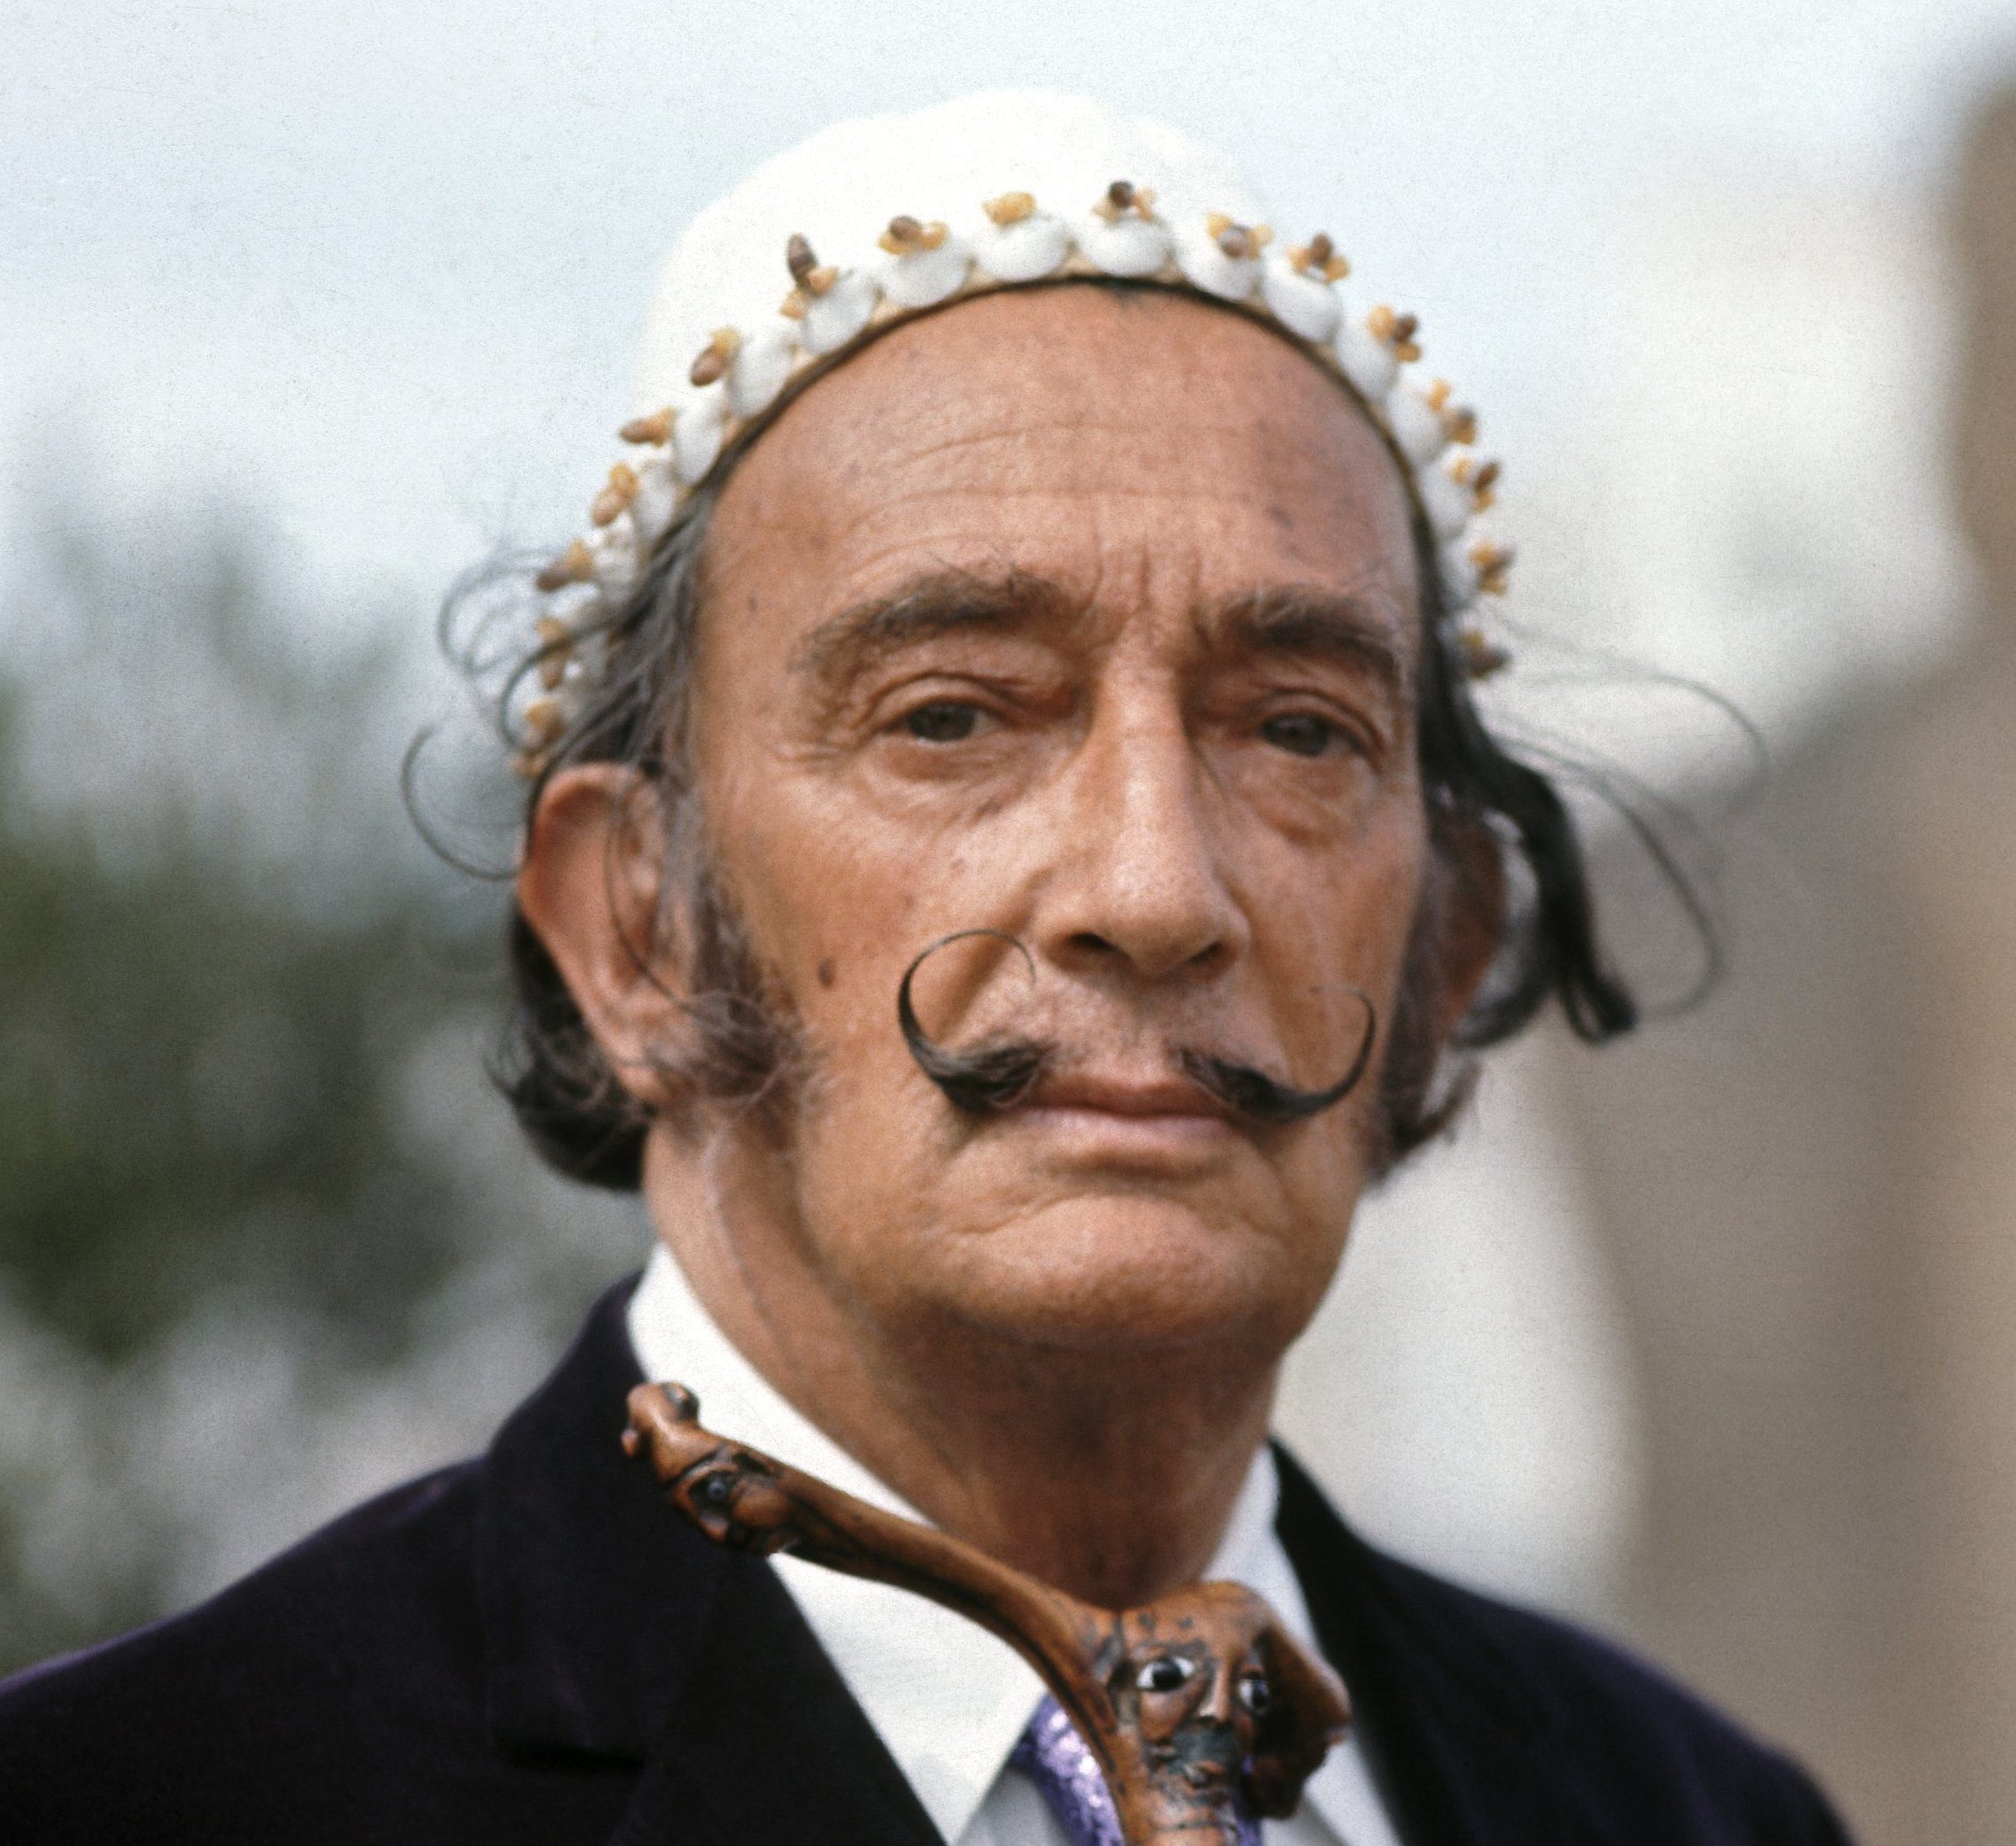 Maler Dalí wird aus dem Grab geholt